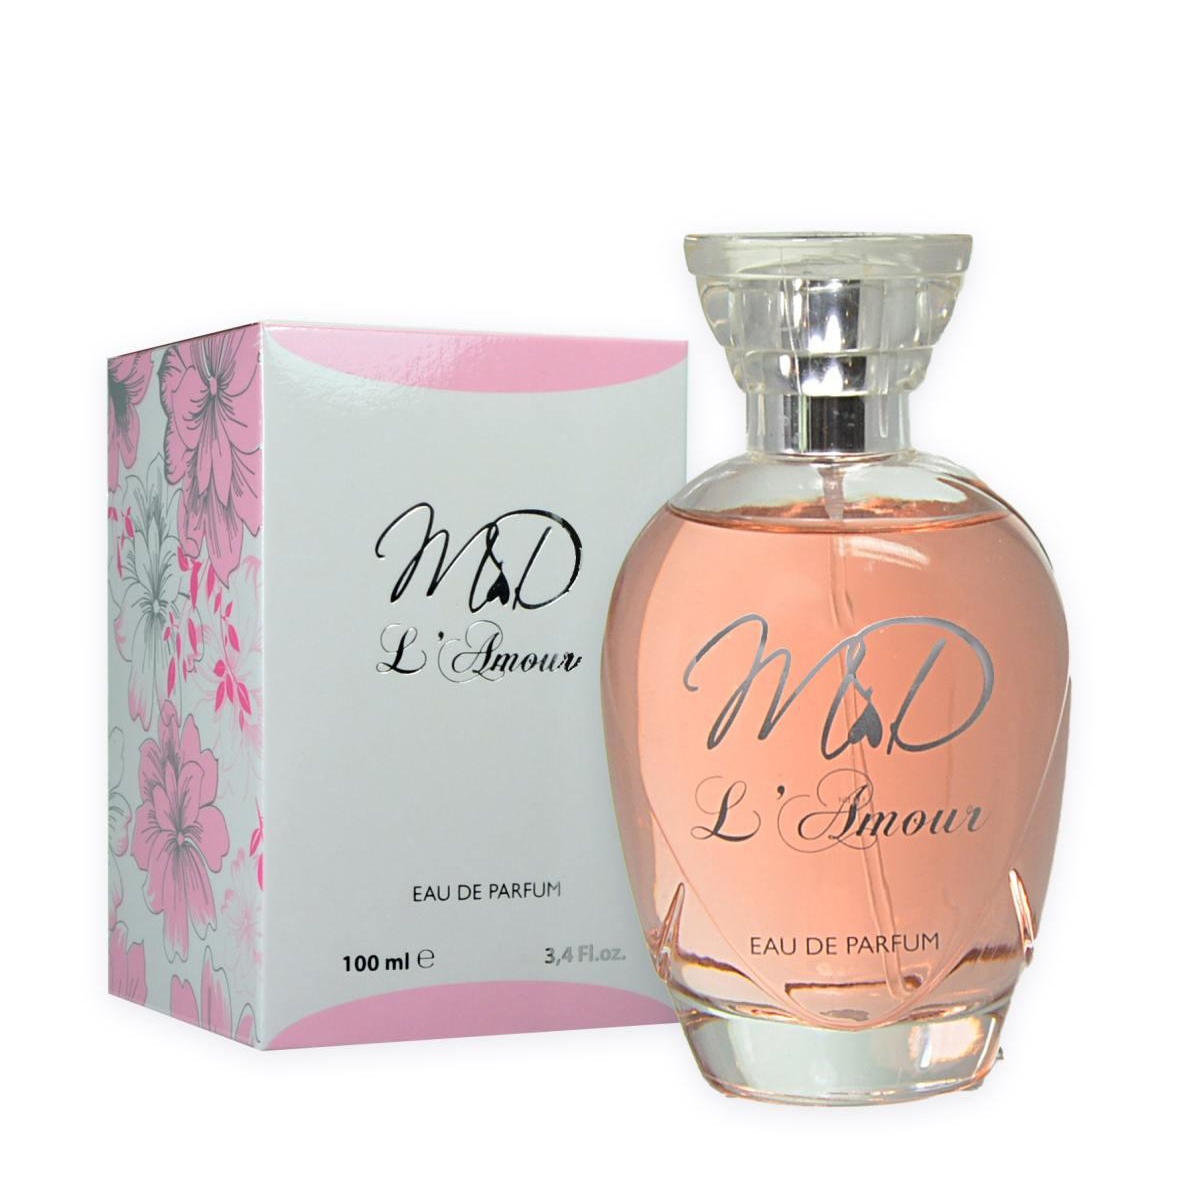 M&D L'Amour Eau de Parfum - 100 ml